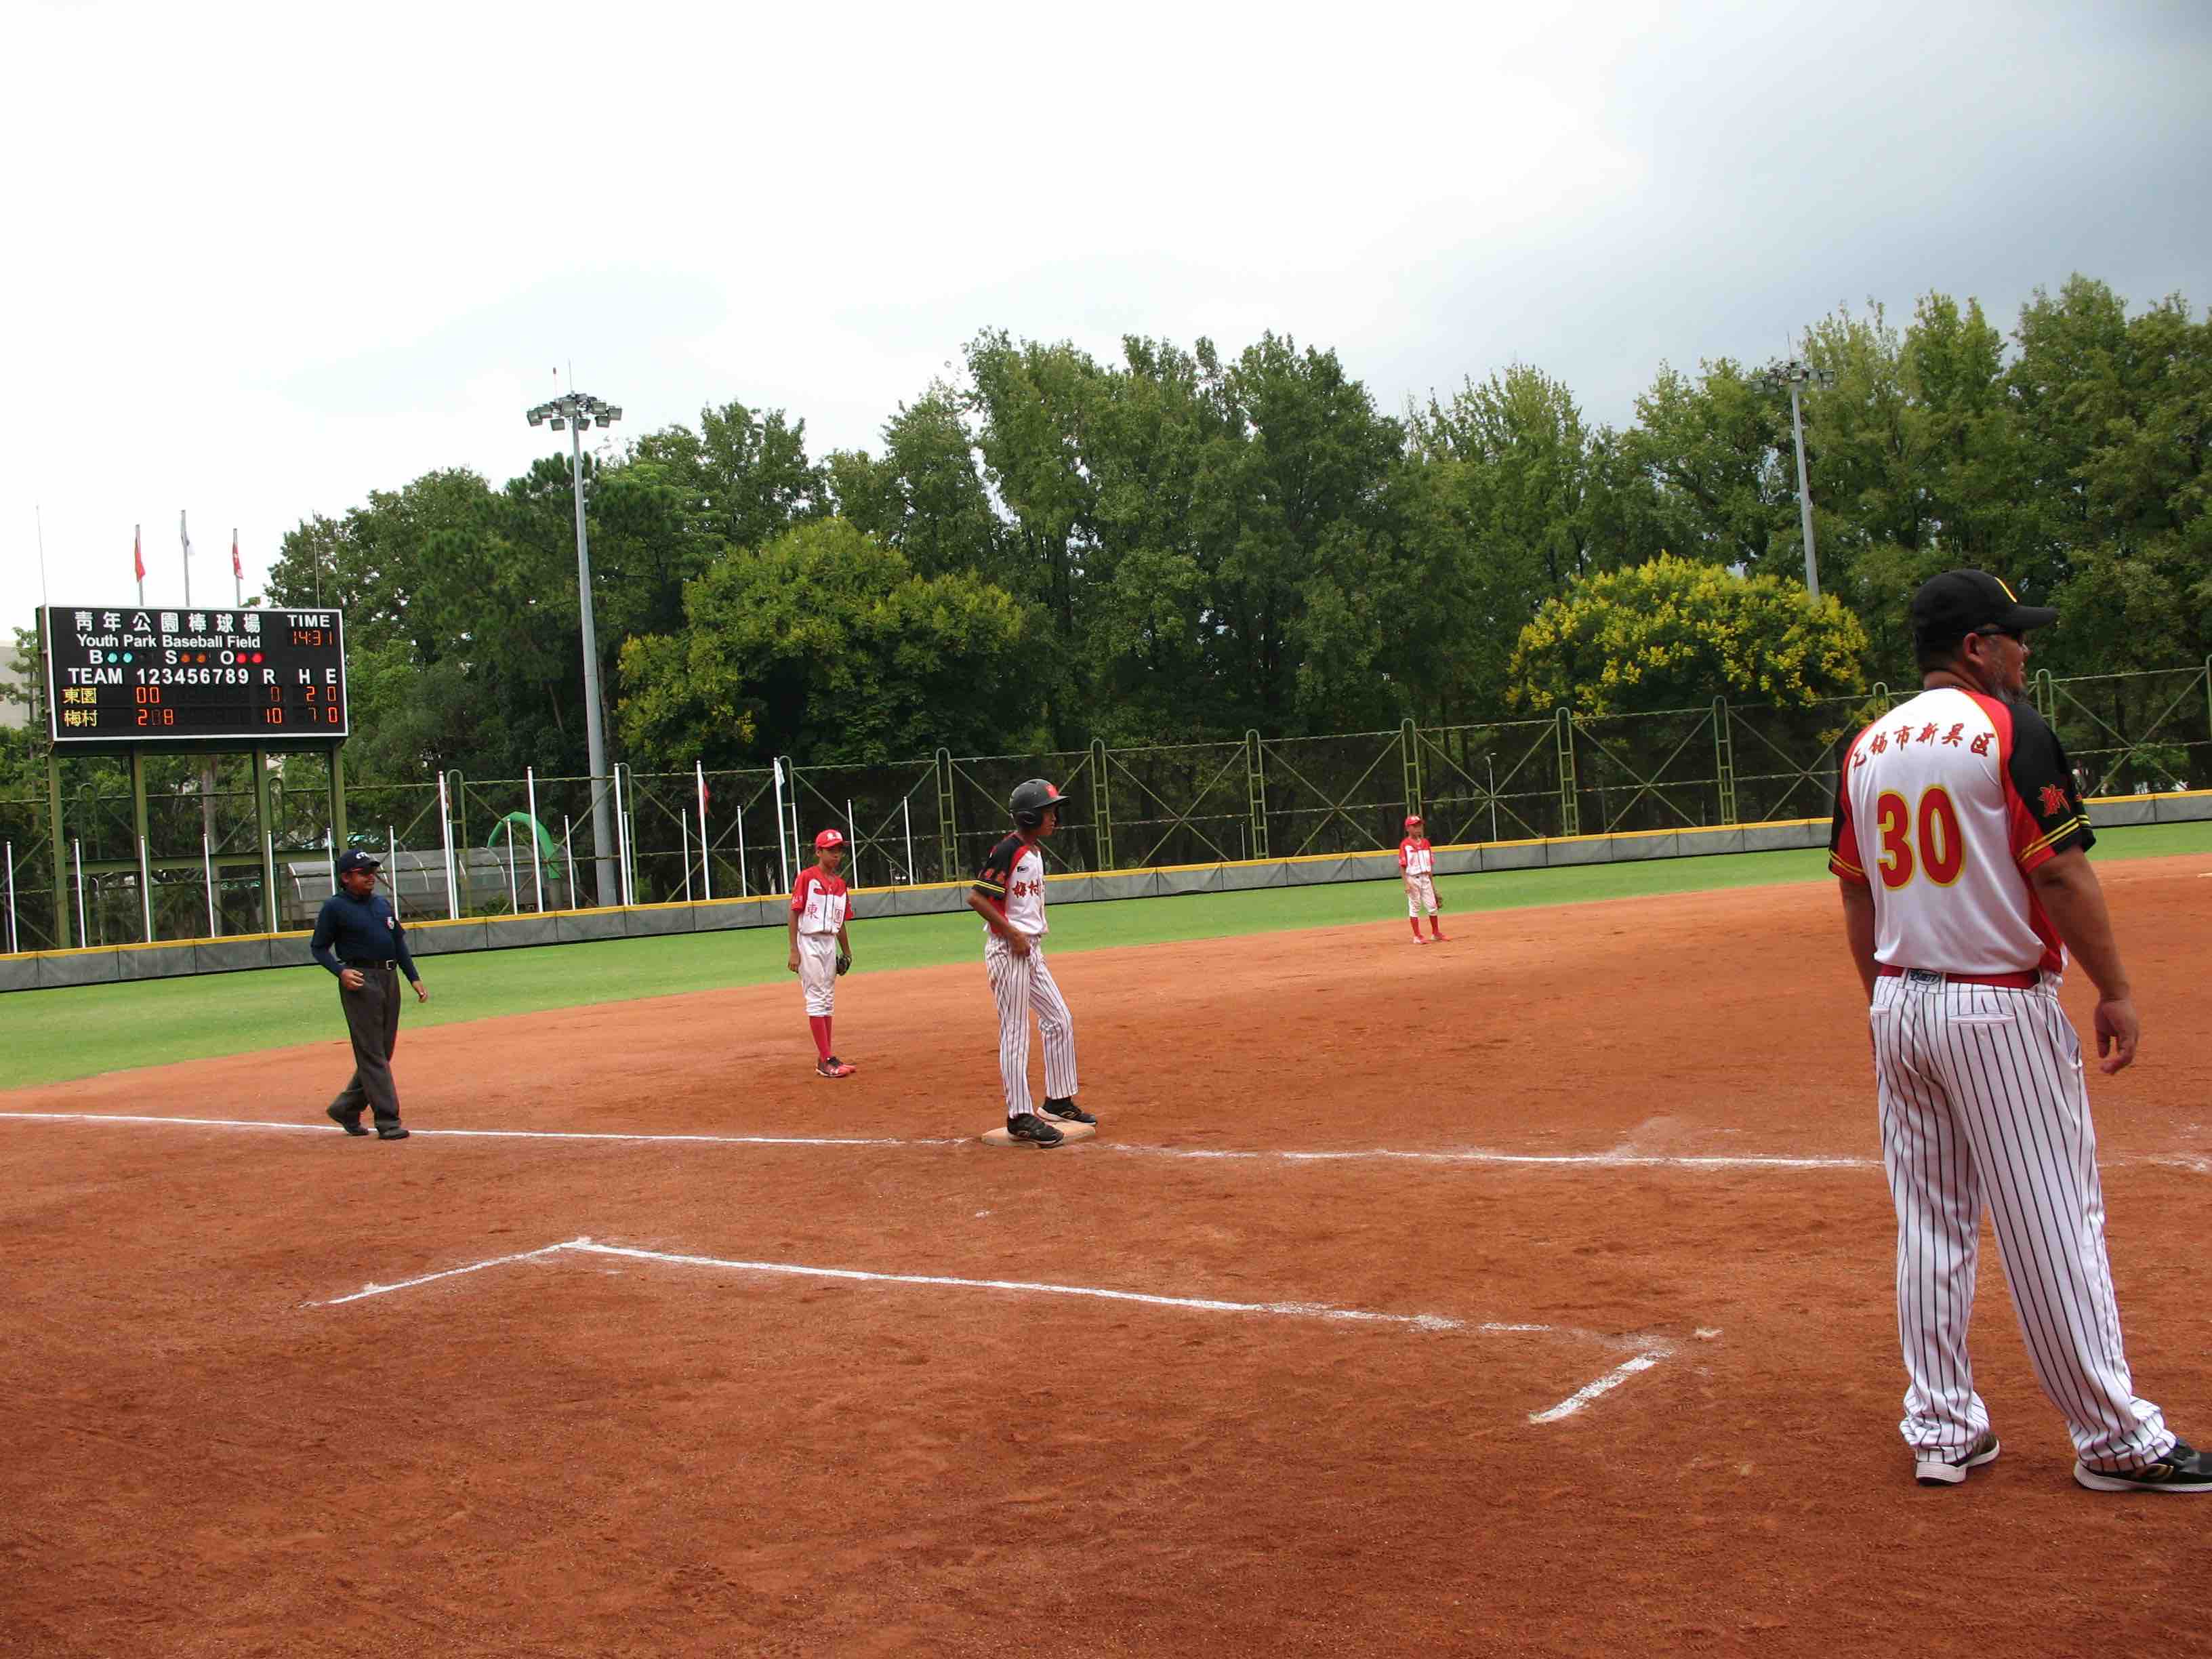 李偉教練站上三壘指導區給場上的無錫梅村實驗小學棒球隊小球員指導。